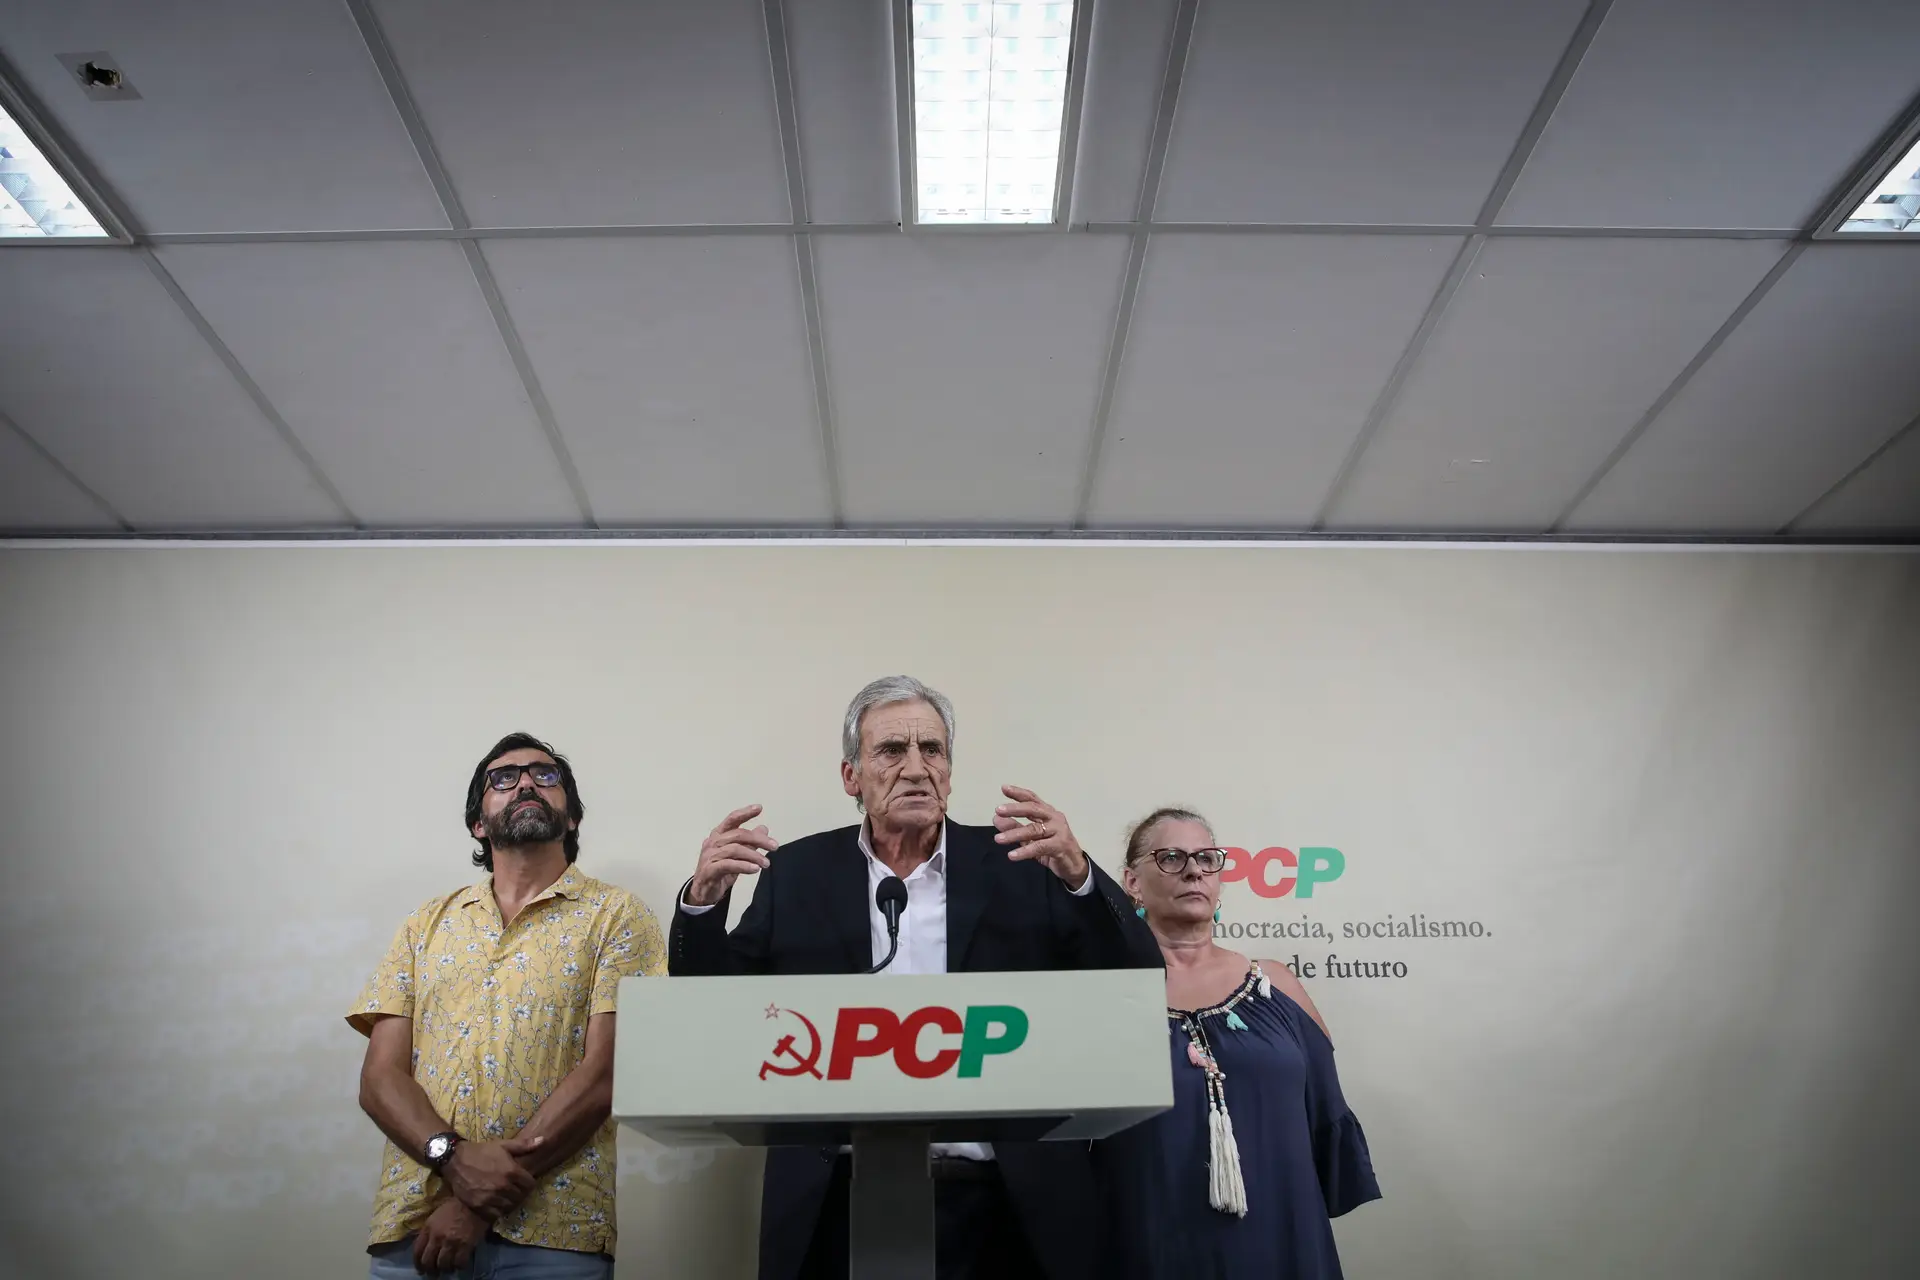 "Aquilo que vem aí não é bom", diz Jerónimo de Sousa, que acusa o PS de estar cada vez mais "inclinado" para a direita